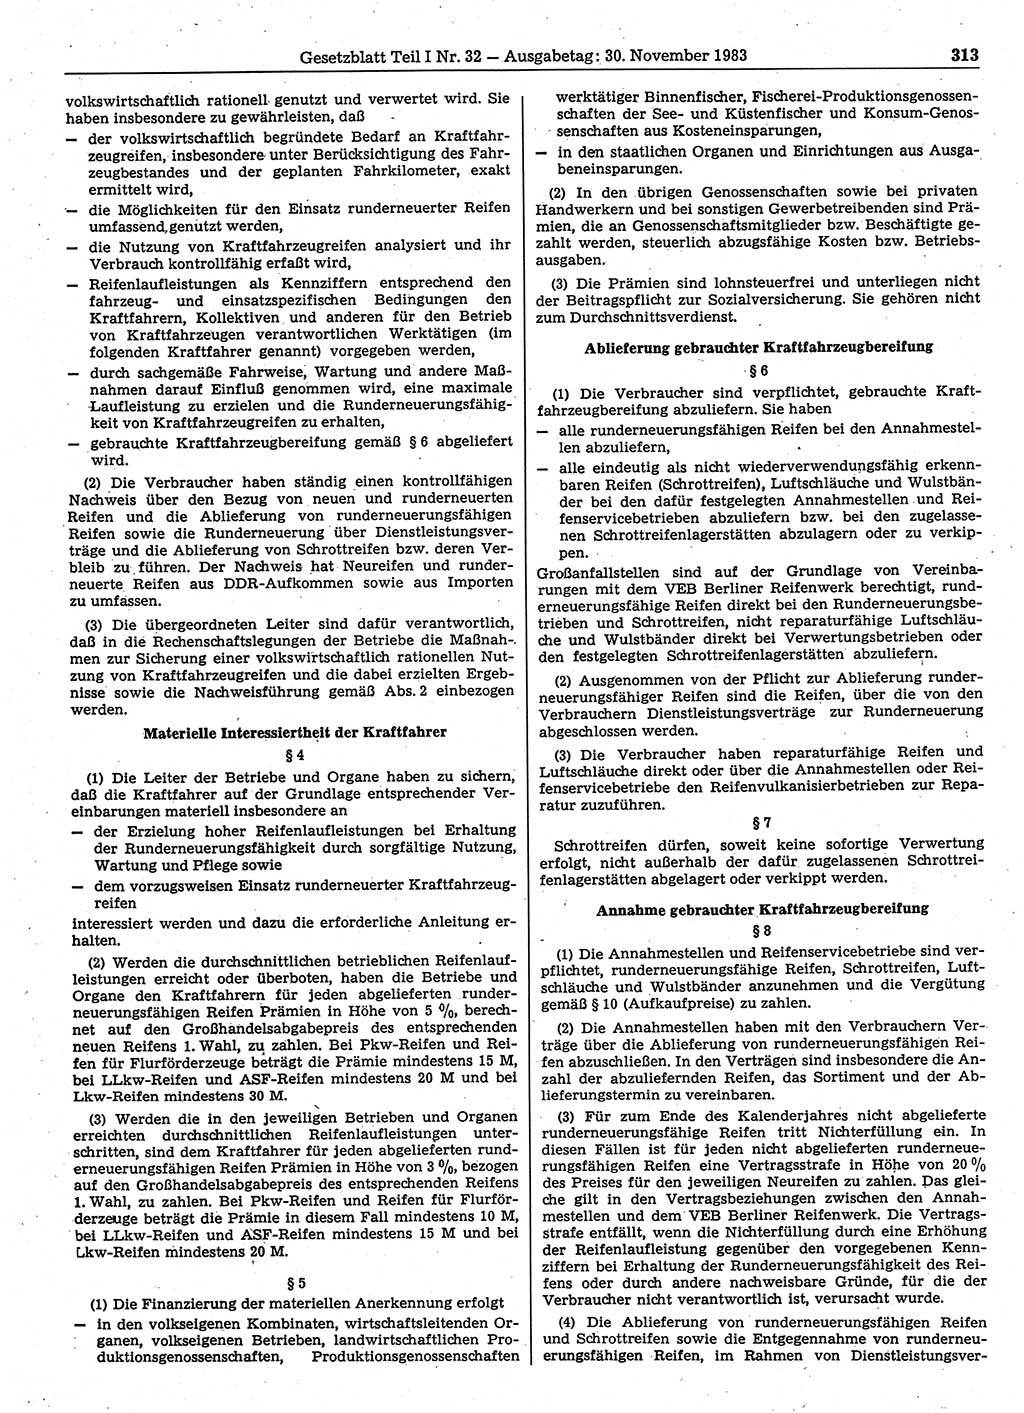 Gesetzblatt (GBl.) der Deutschen Demokratischen Republik (DDR) Teil Ⅰ 1983, Seite 313 (GBl. DDR Ⅰ 1983, S. 313)